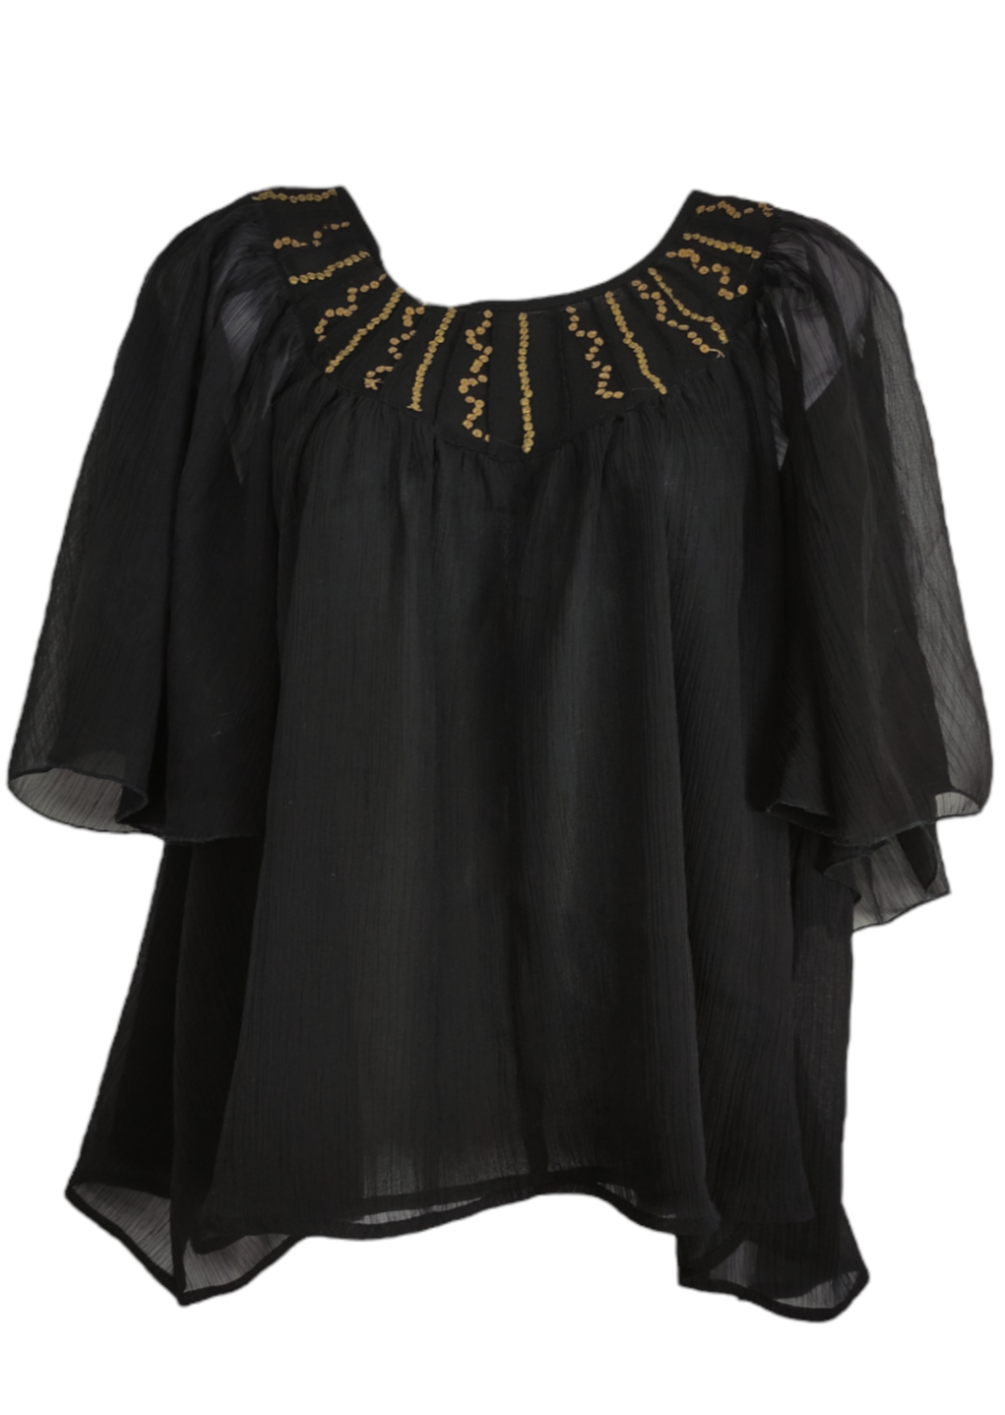 Γυναικεία Μπλούζα ROMEO & JULIET με Διπλή διαφάνεια σε Μαύρο χρώμα (Medium)